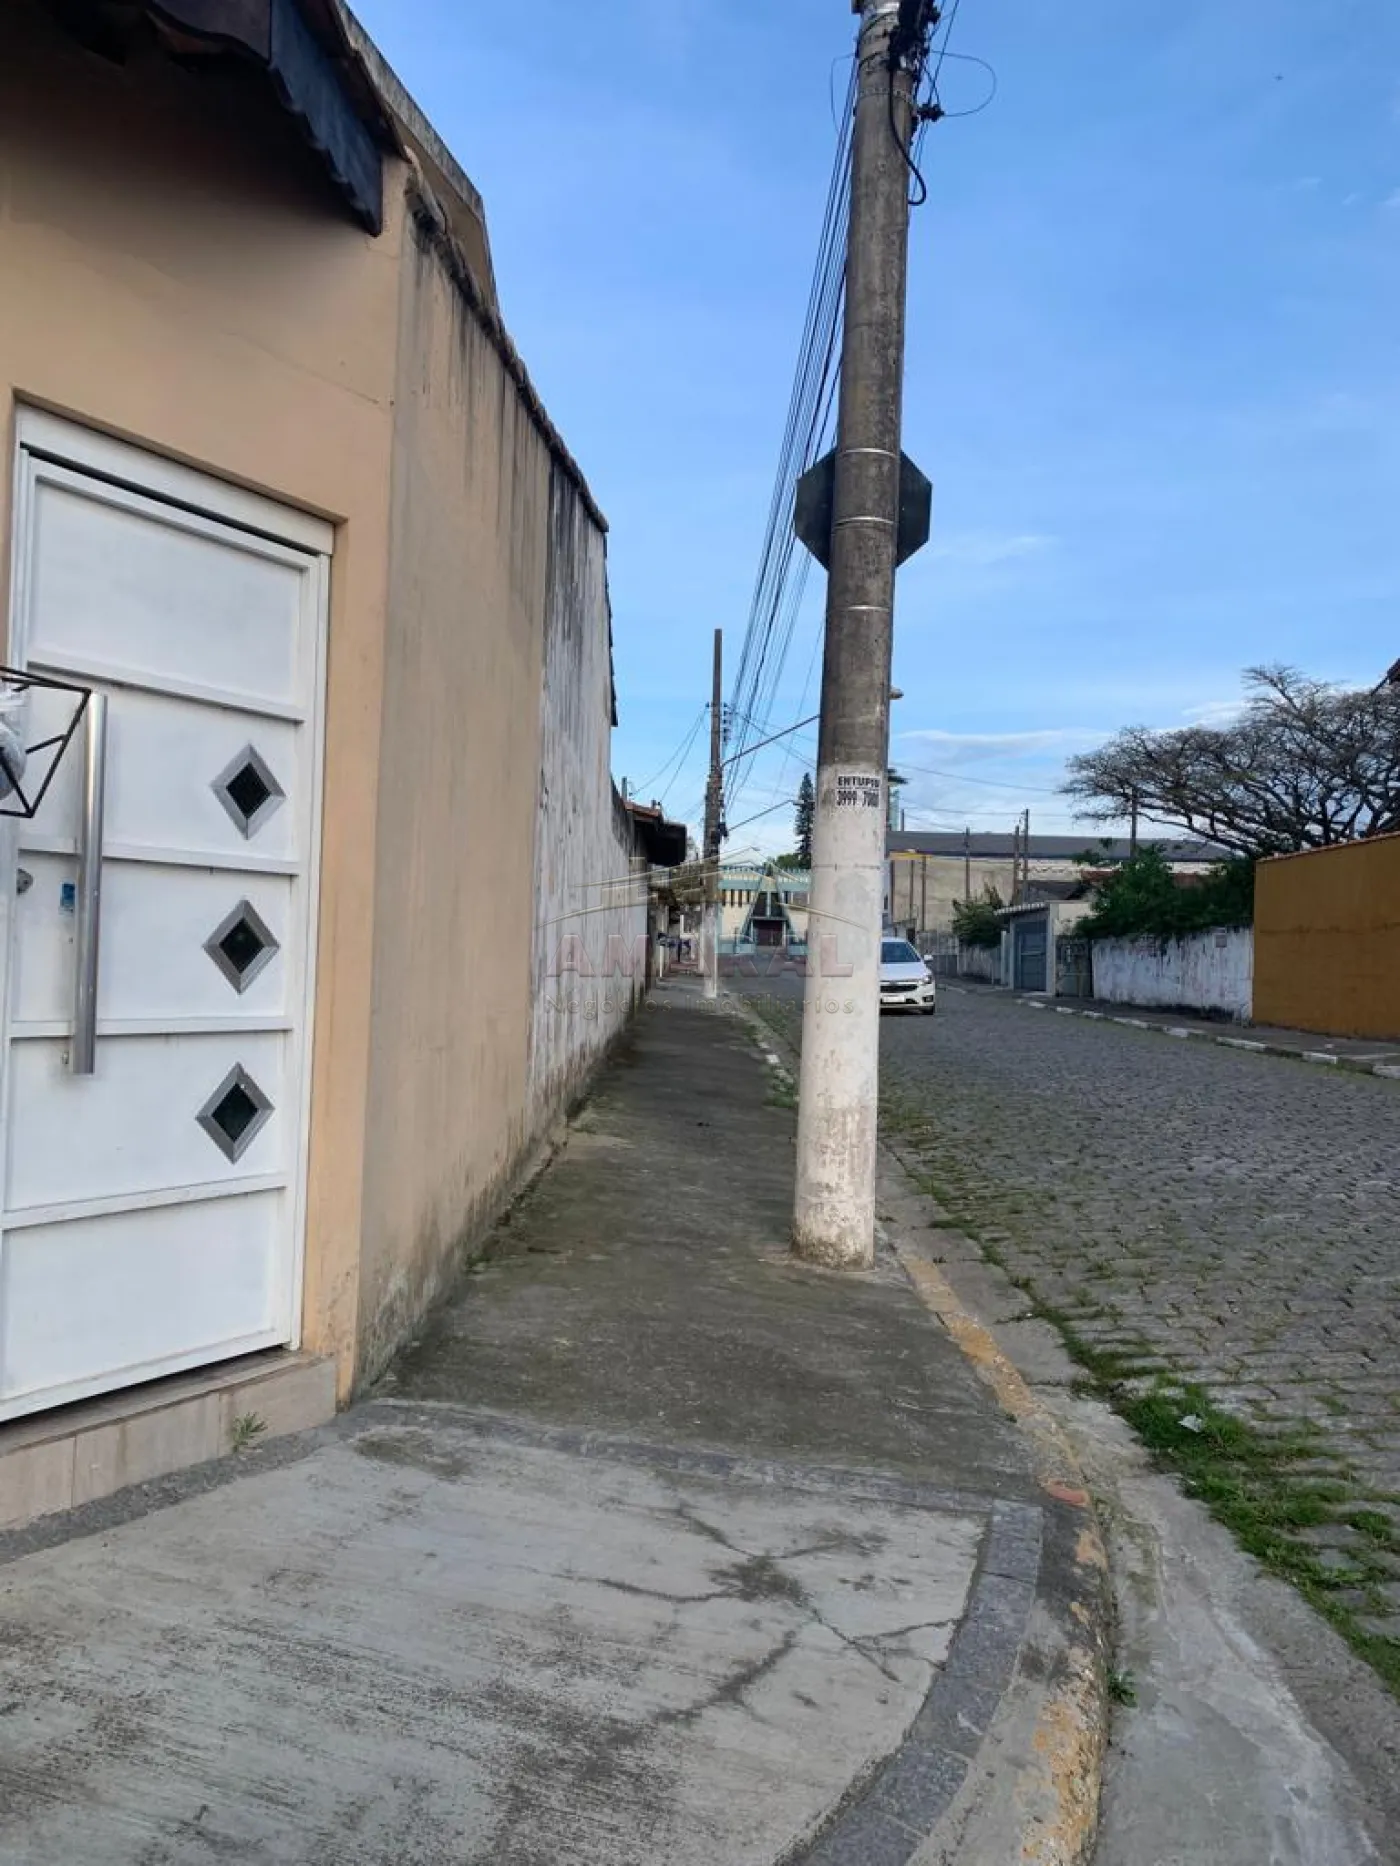 Comprar Casas / Térrea em Suzano R$ 450.000,00 - Foto 2